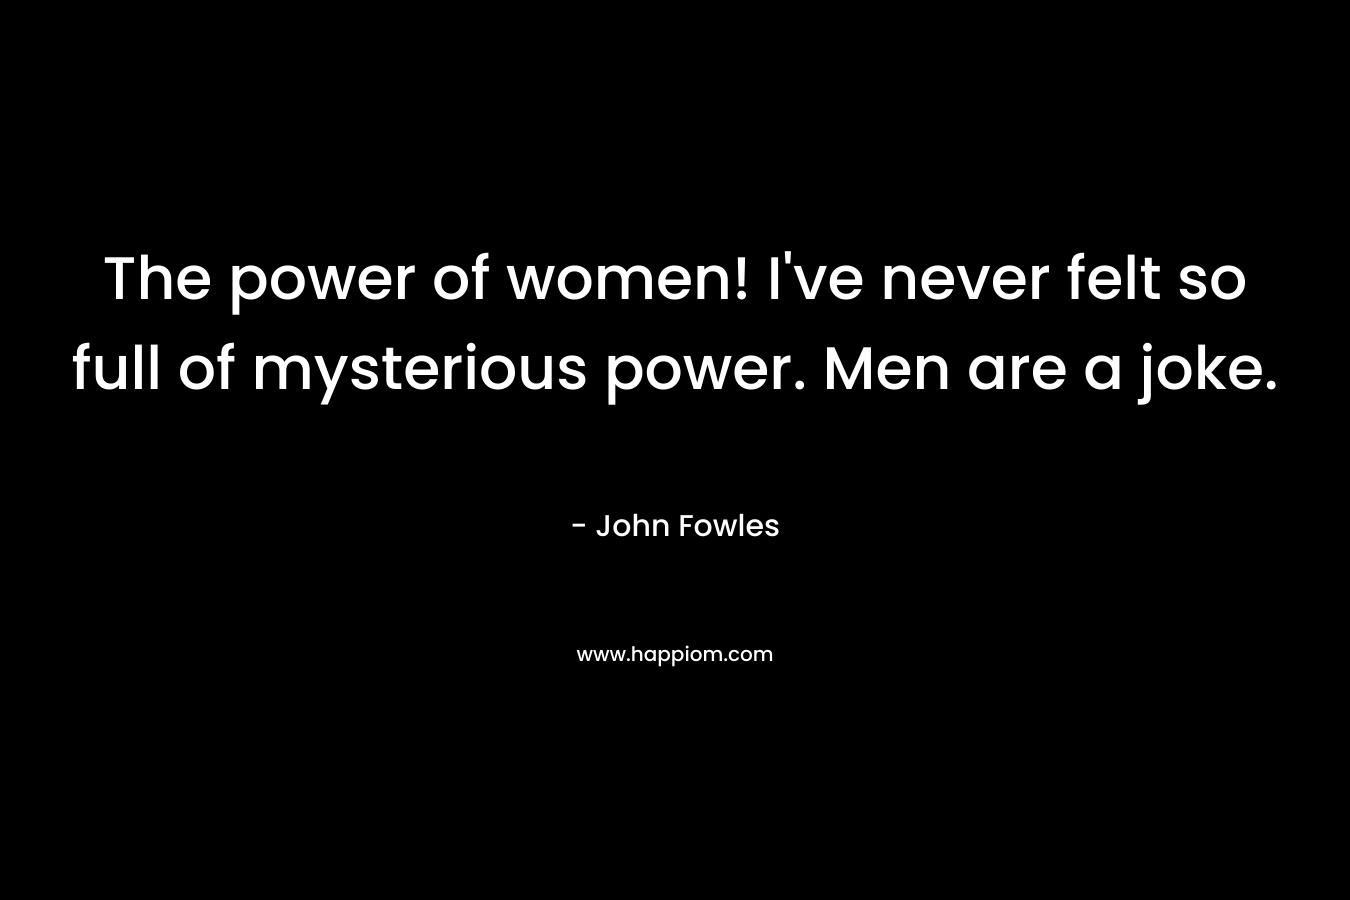 The power of women! I've never felt so full of mysterious power. Men are a joke.